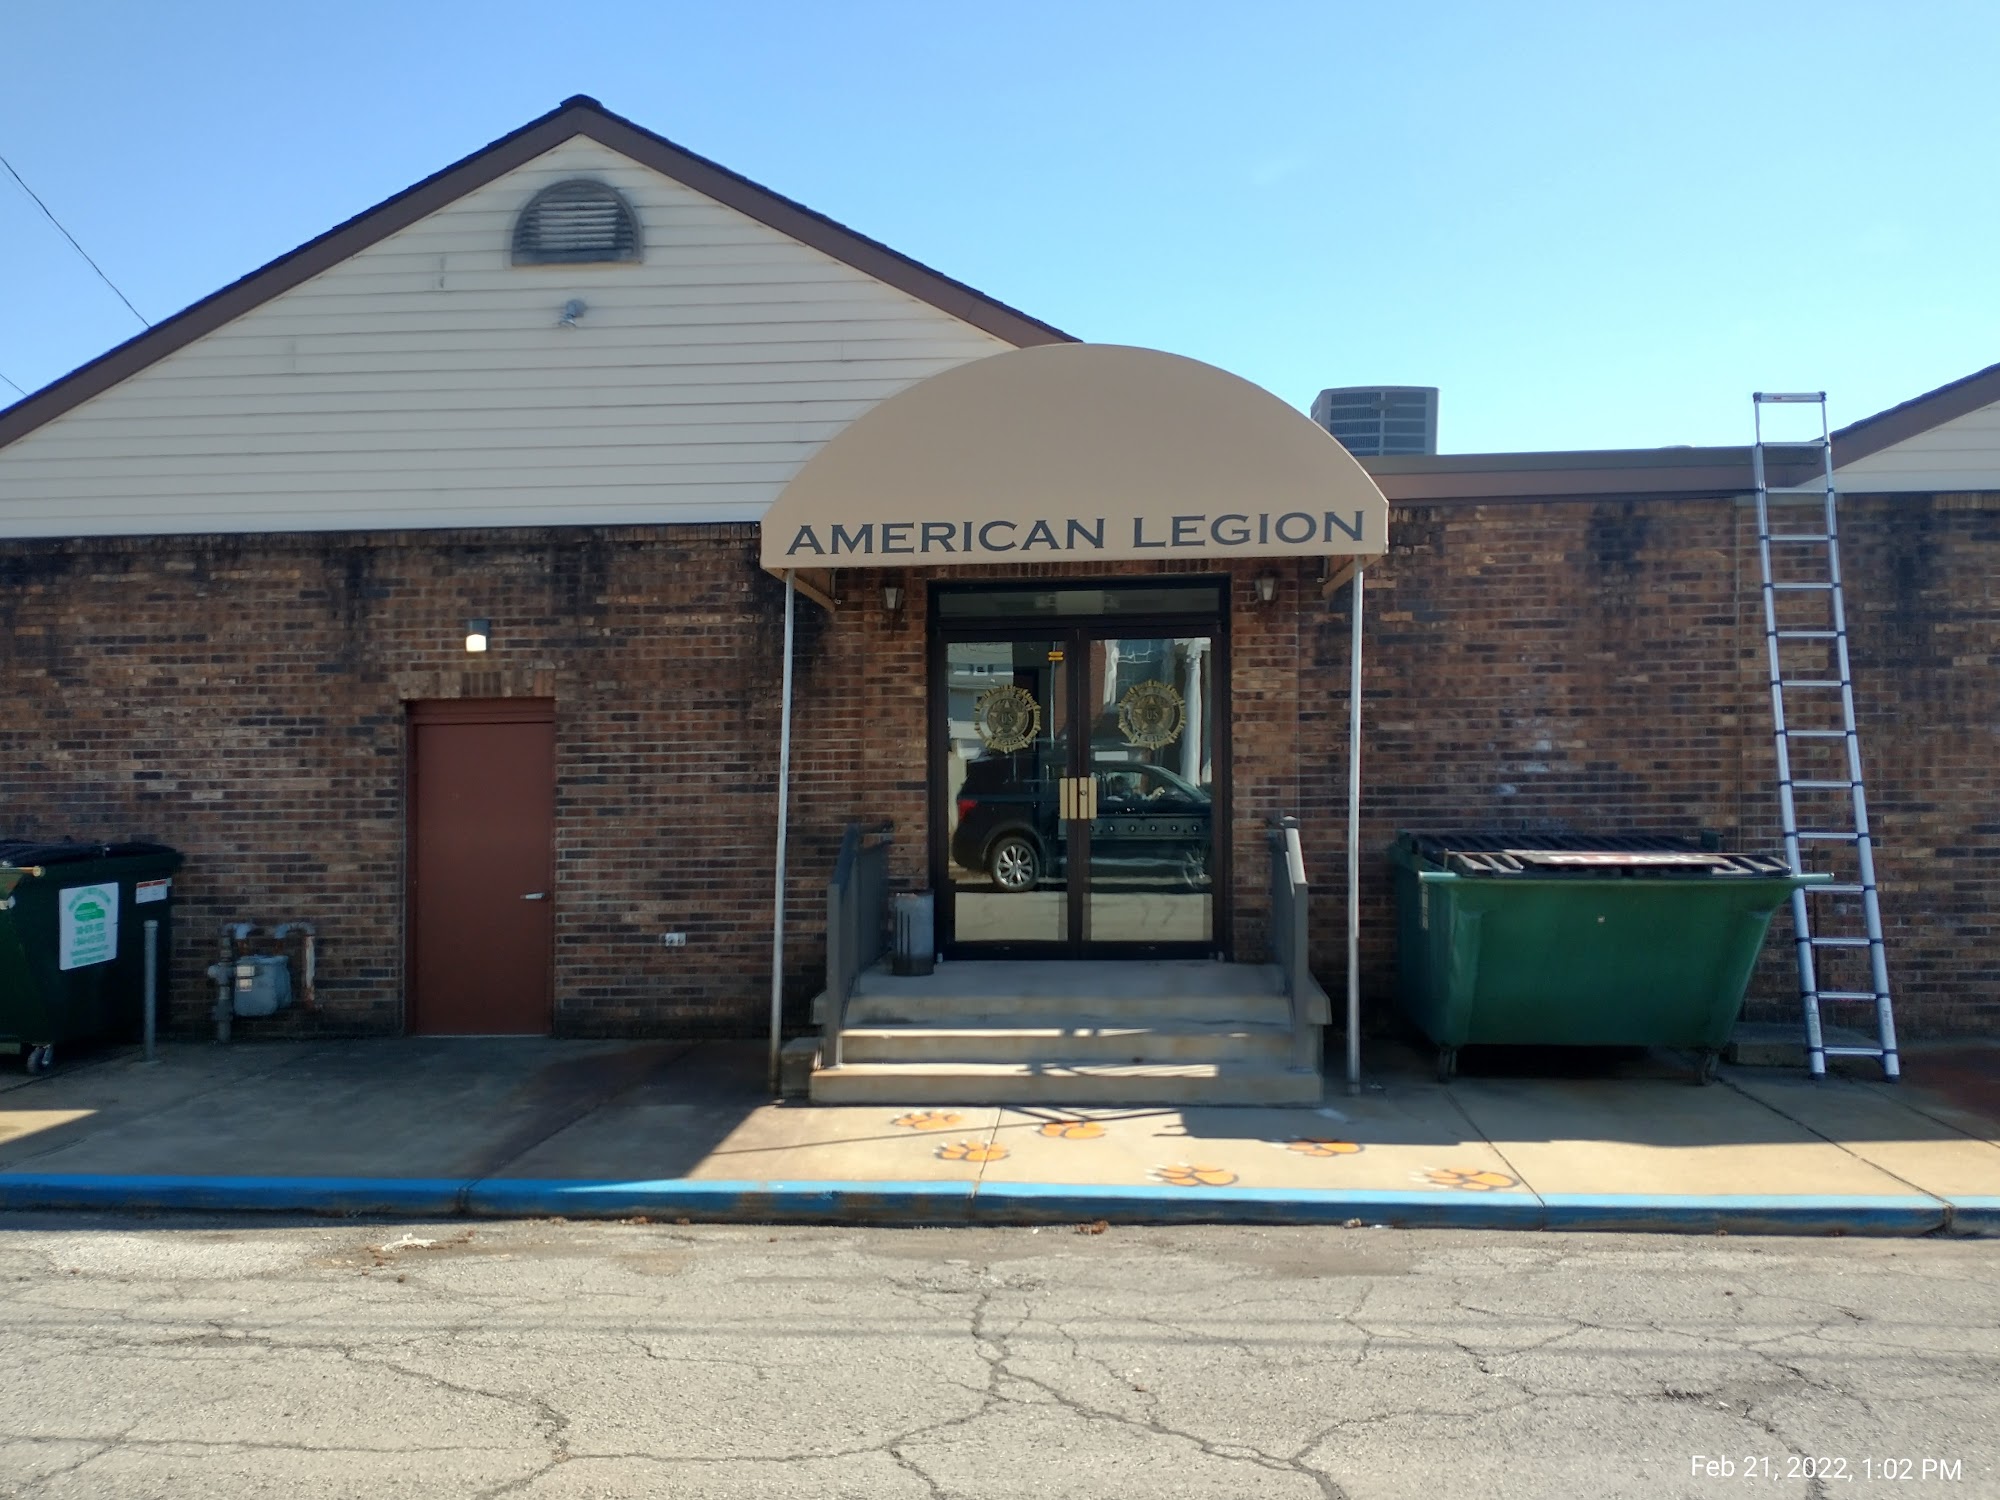 American Legion 3809 Central Ave, Shadyside Ohio 43947